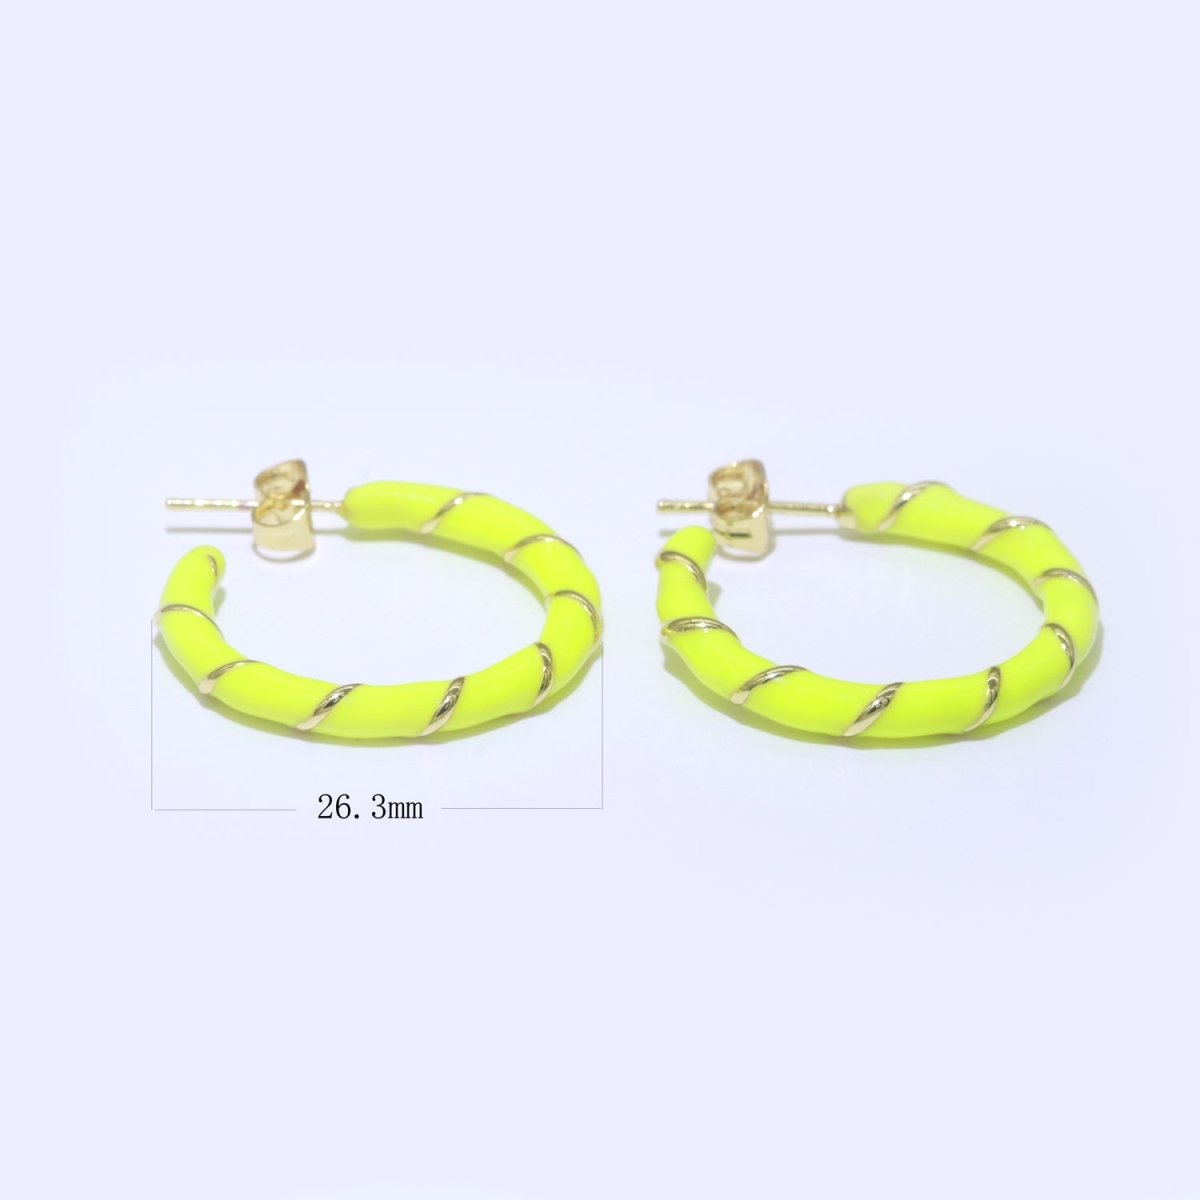 Yellow Enamel Hoop Earring with Gold Swirl 26mm Hoop earring Jewelry Gift T-010 - DLUXCA